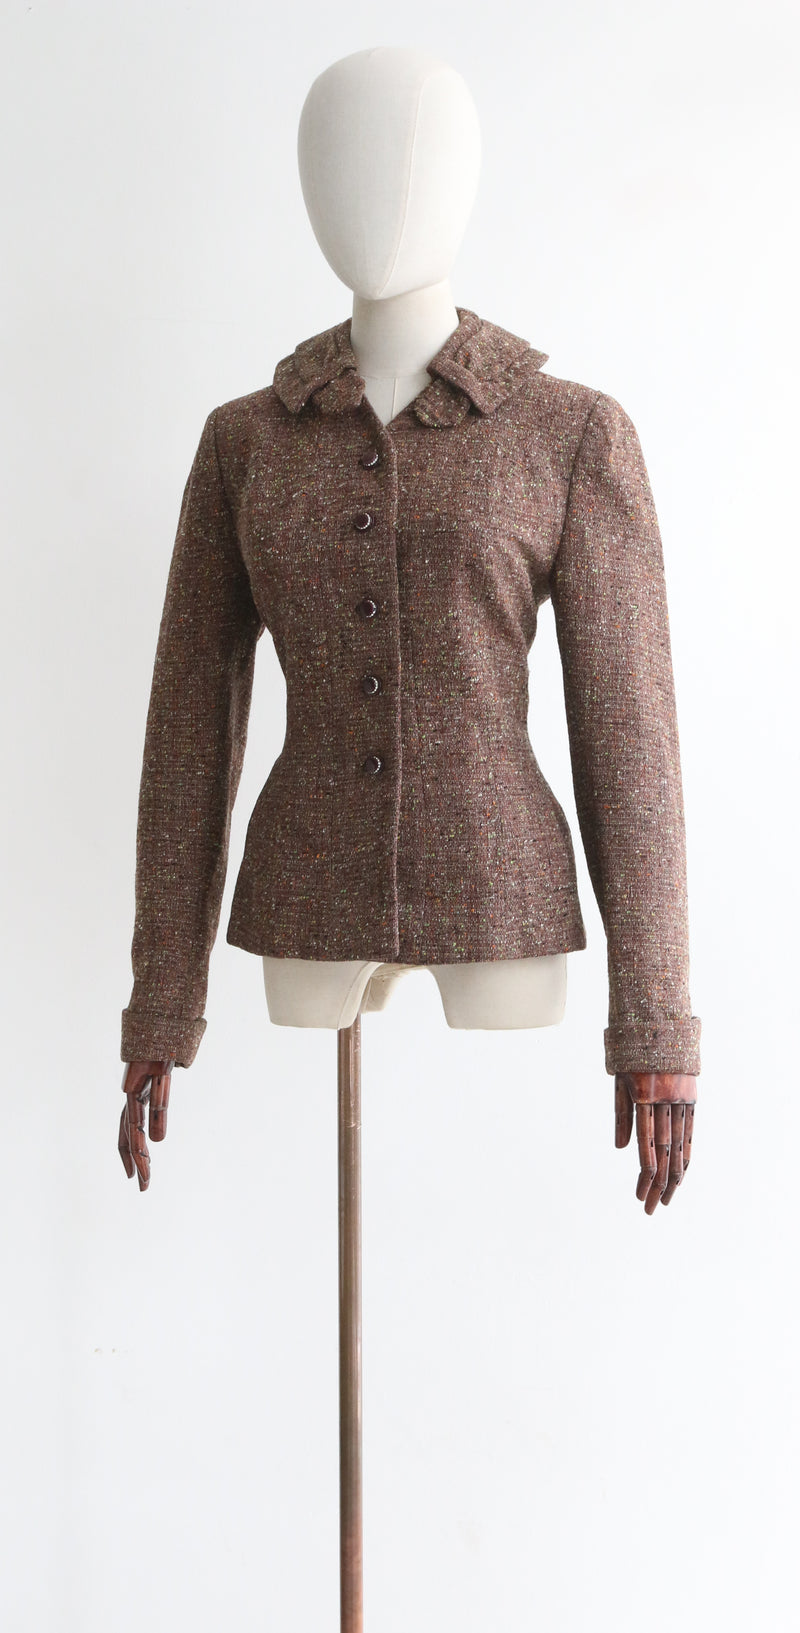 "Speckled Wool & Rhinestones" Vintage 1940's Speckled Wool Jacket UK 10 US 6